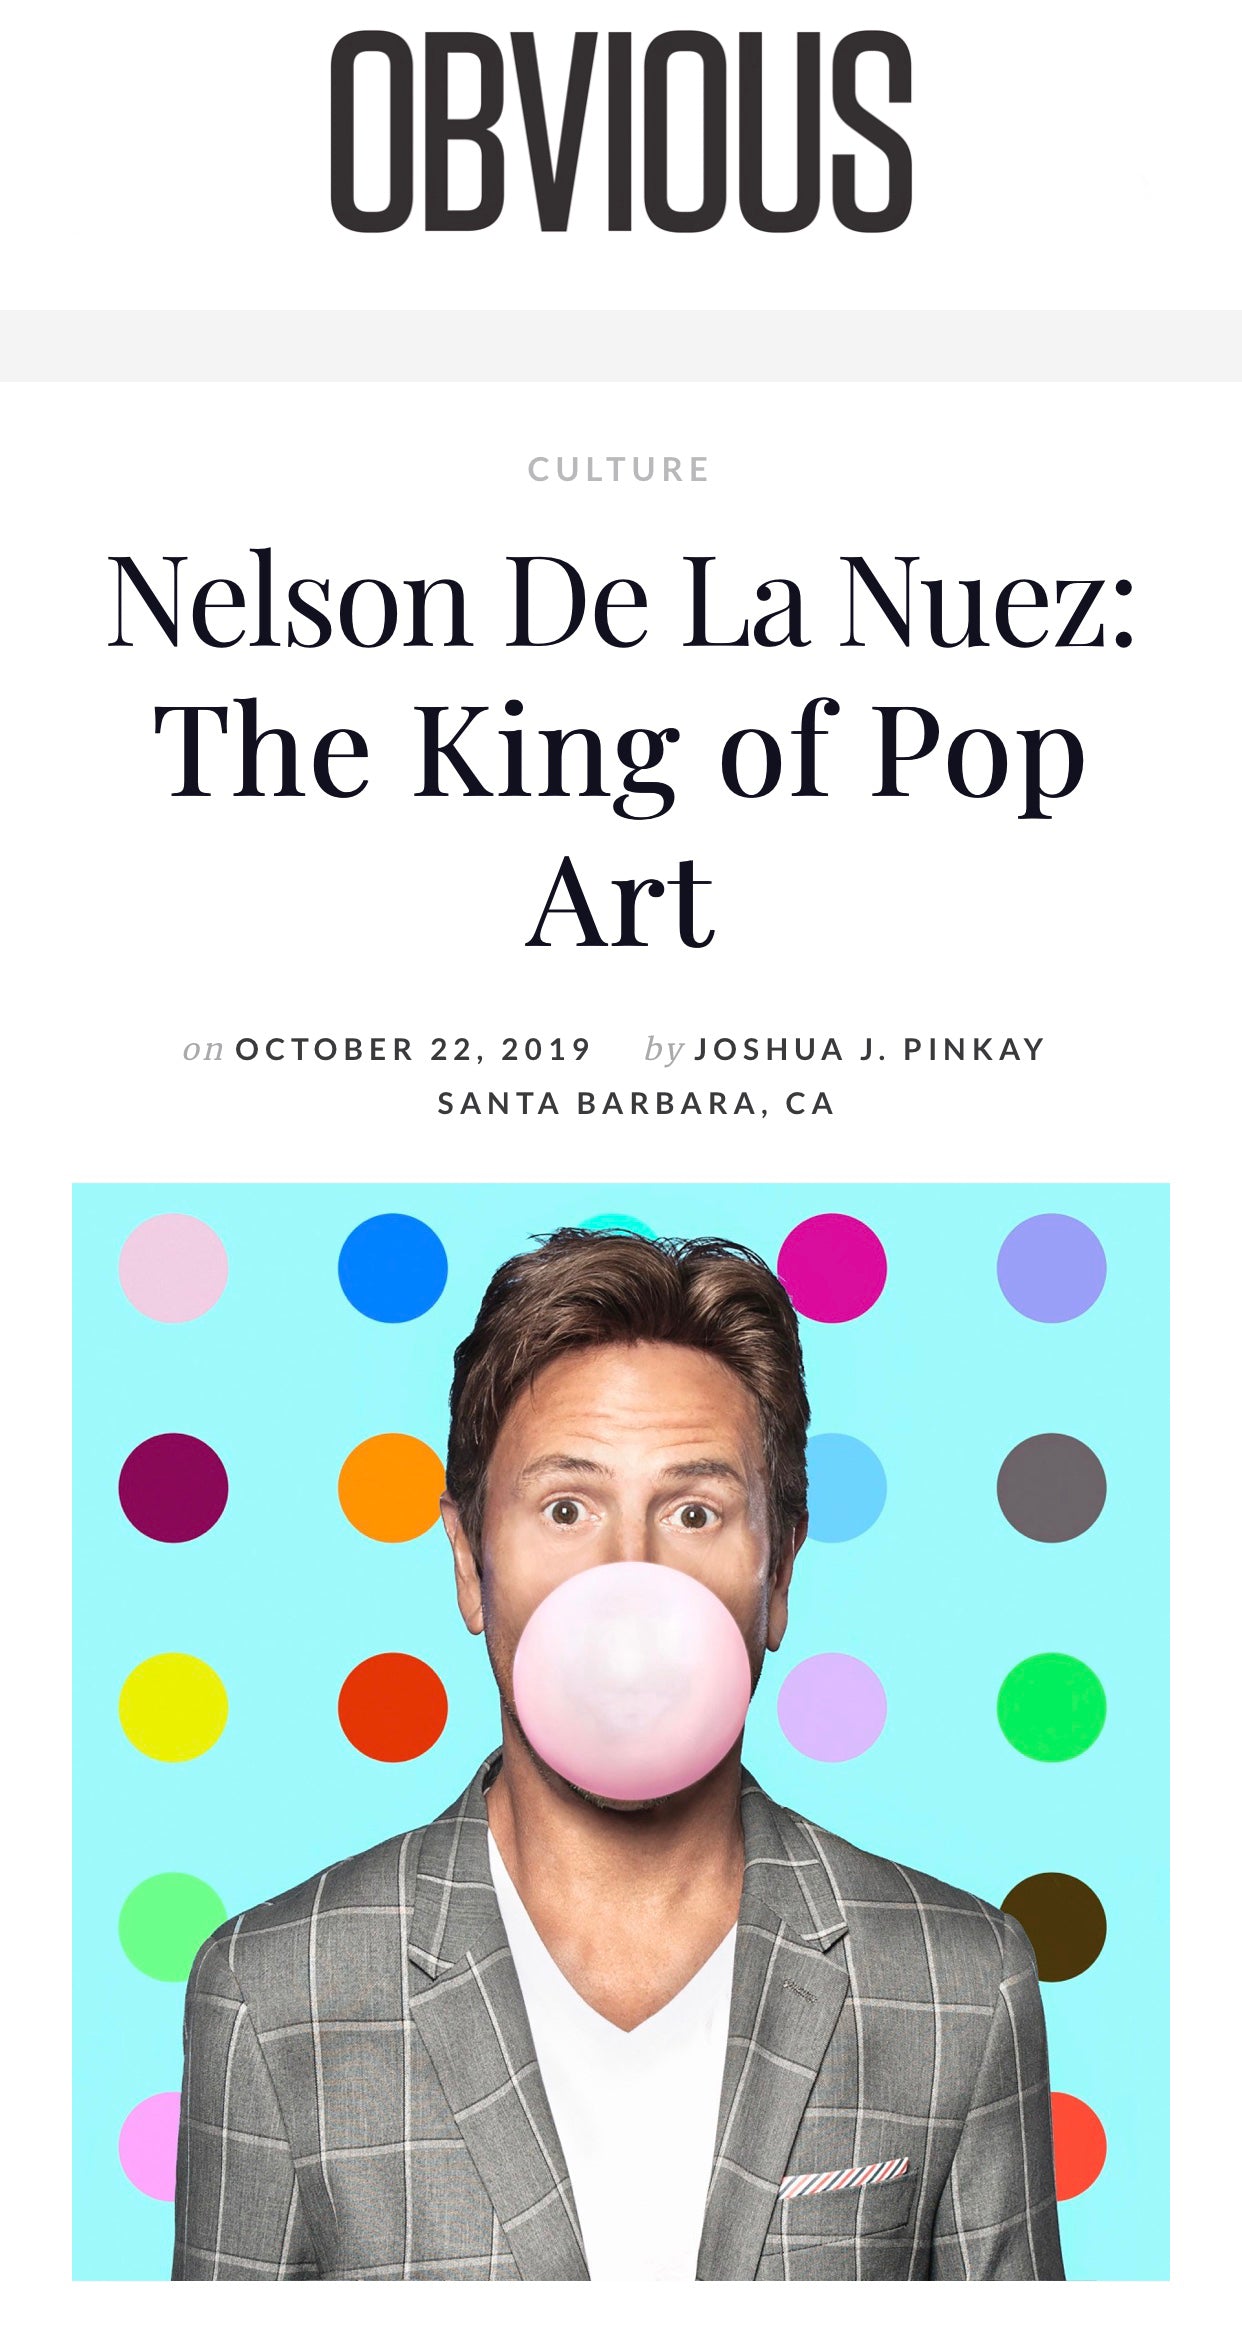 nelson de la nuez king of pop art obvious magazine interview